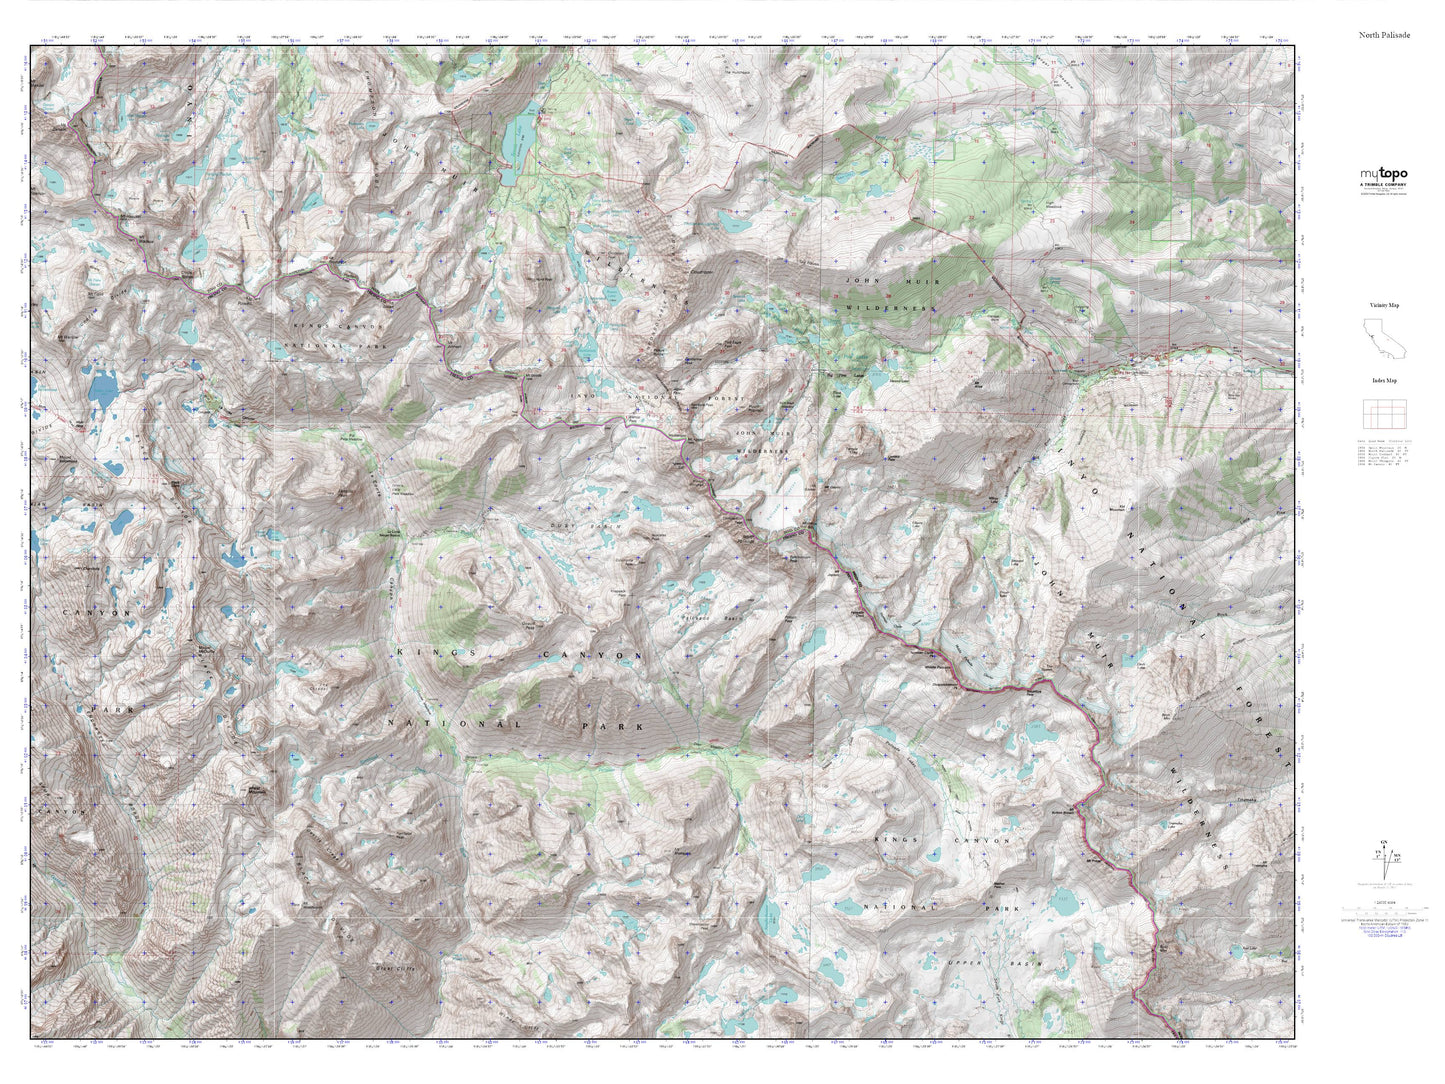 North Palisade MyTopo Explorer Series Map Image